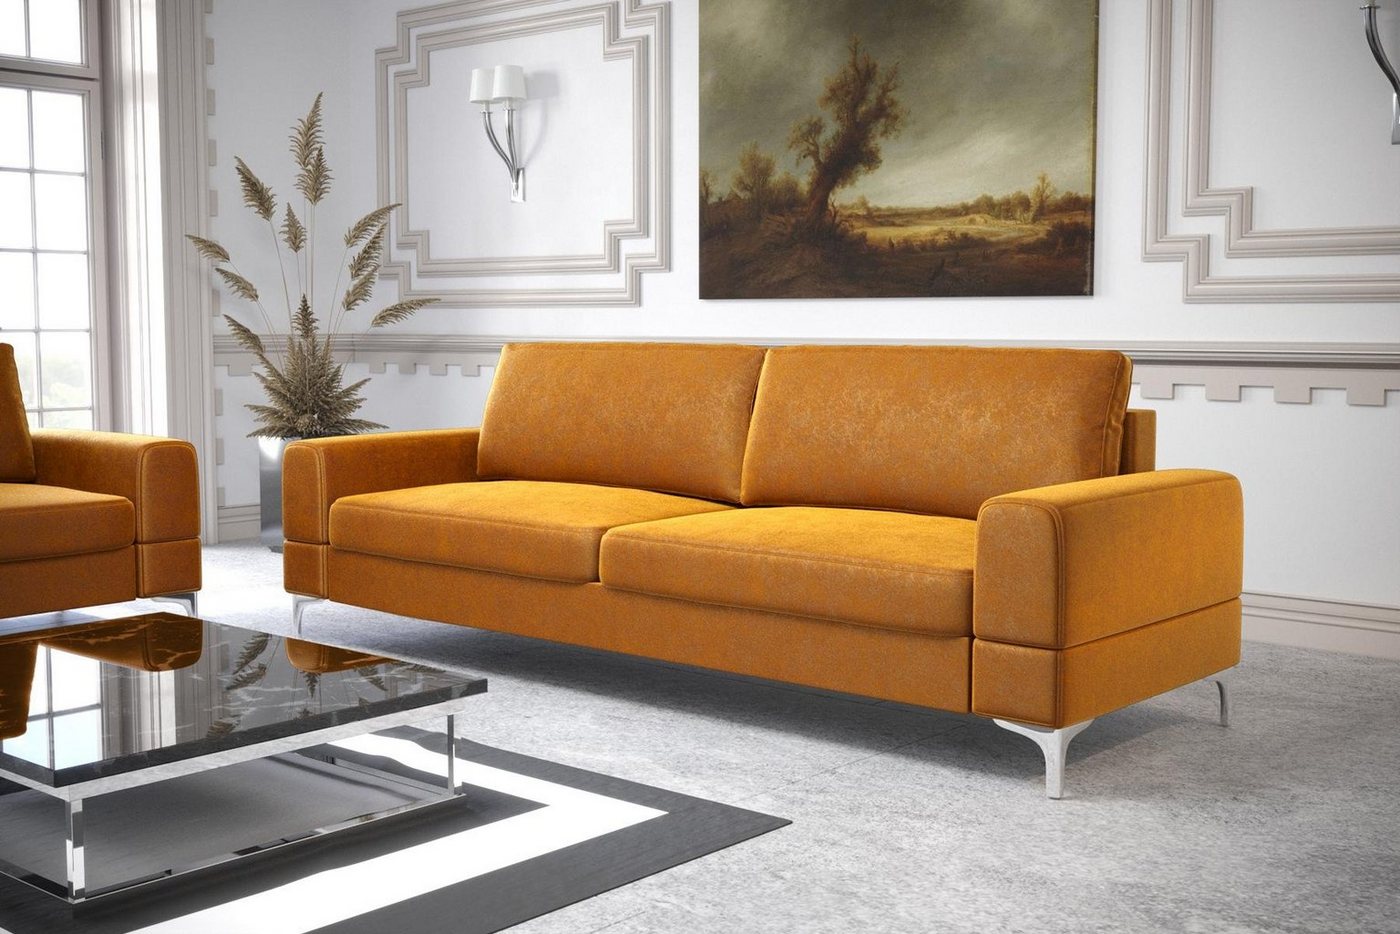 JVmoebel Sofa Modernes Weißes Sofa Dreisitzer Luxus Couch Kunstleder Möbel Holz, Made in Europe von JVmoebel